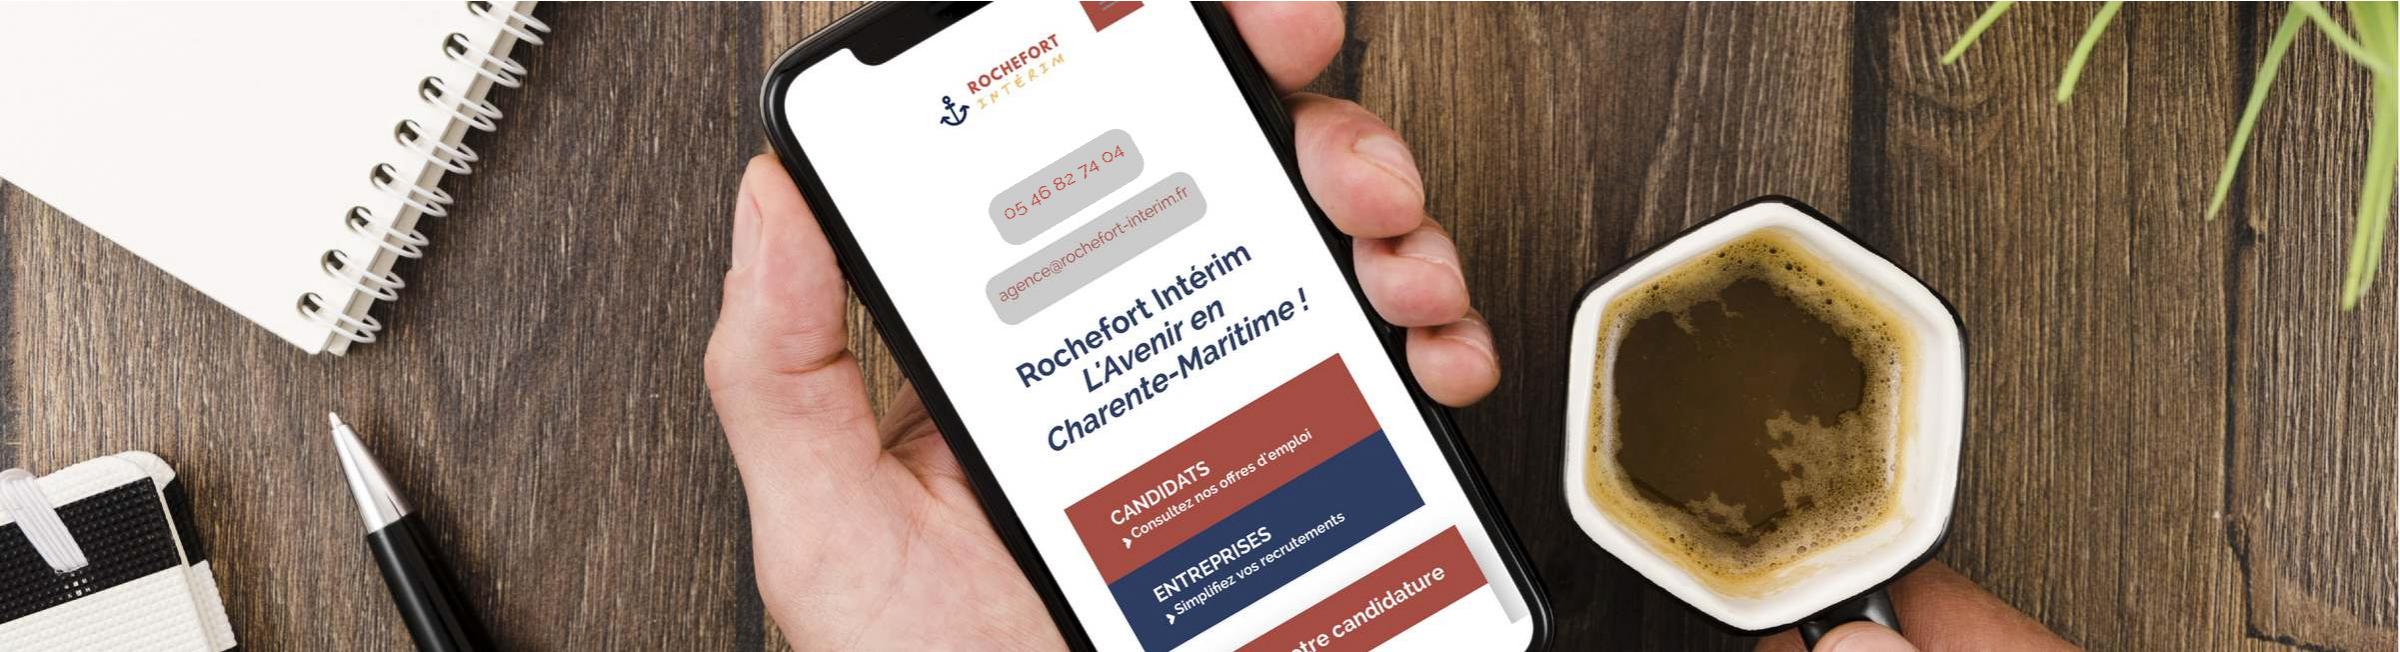 Un candidat utilise son smartphone pour contacter l'agence d'emploi Rochefort Intérim